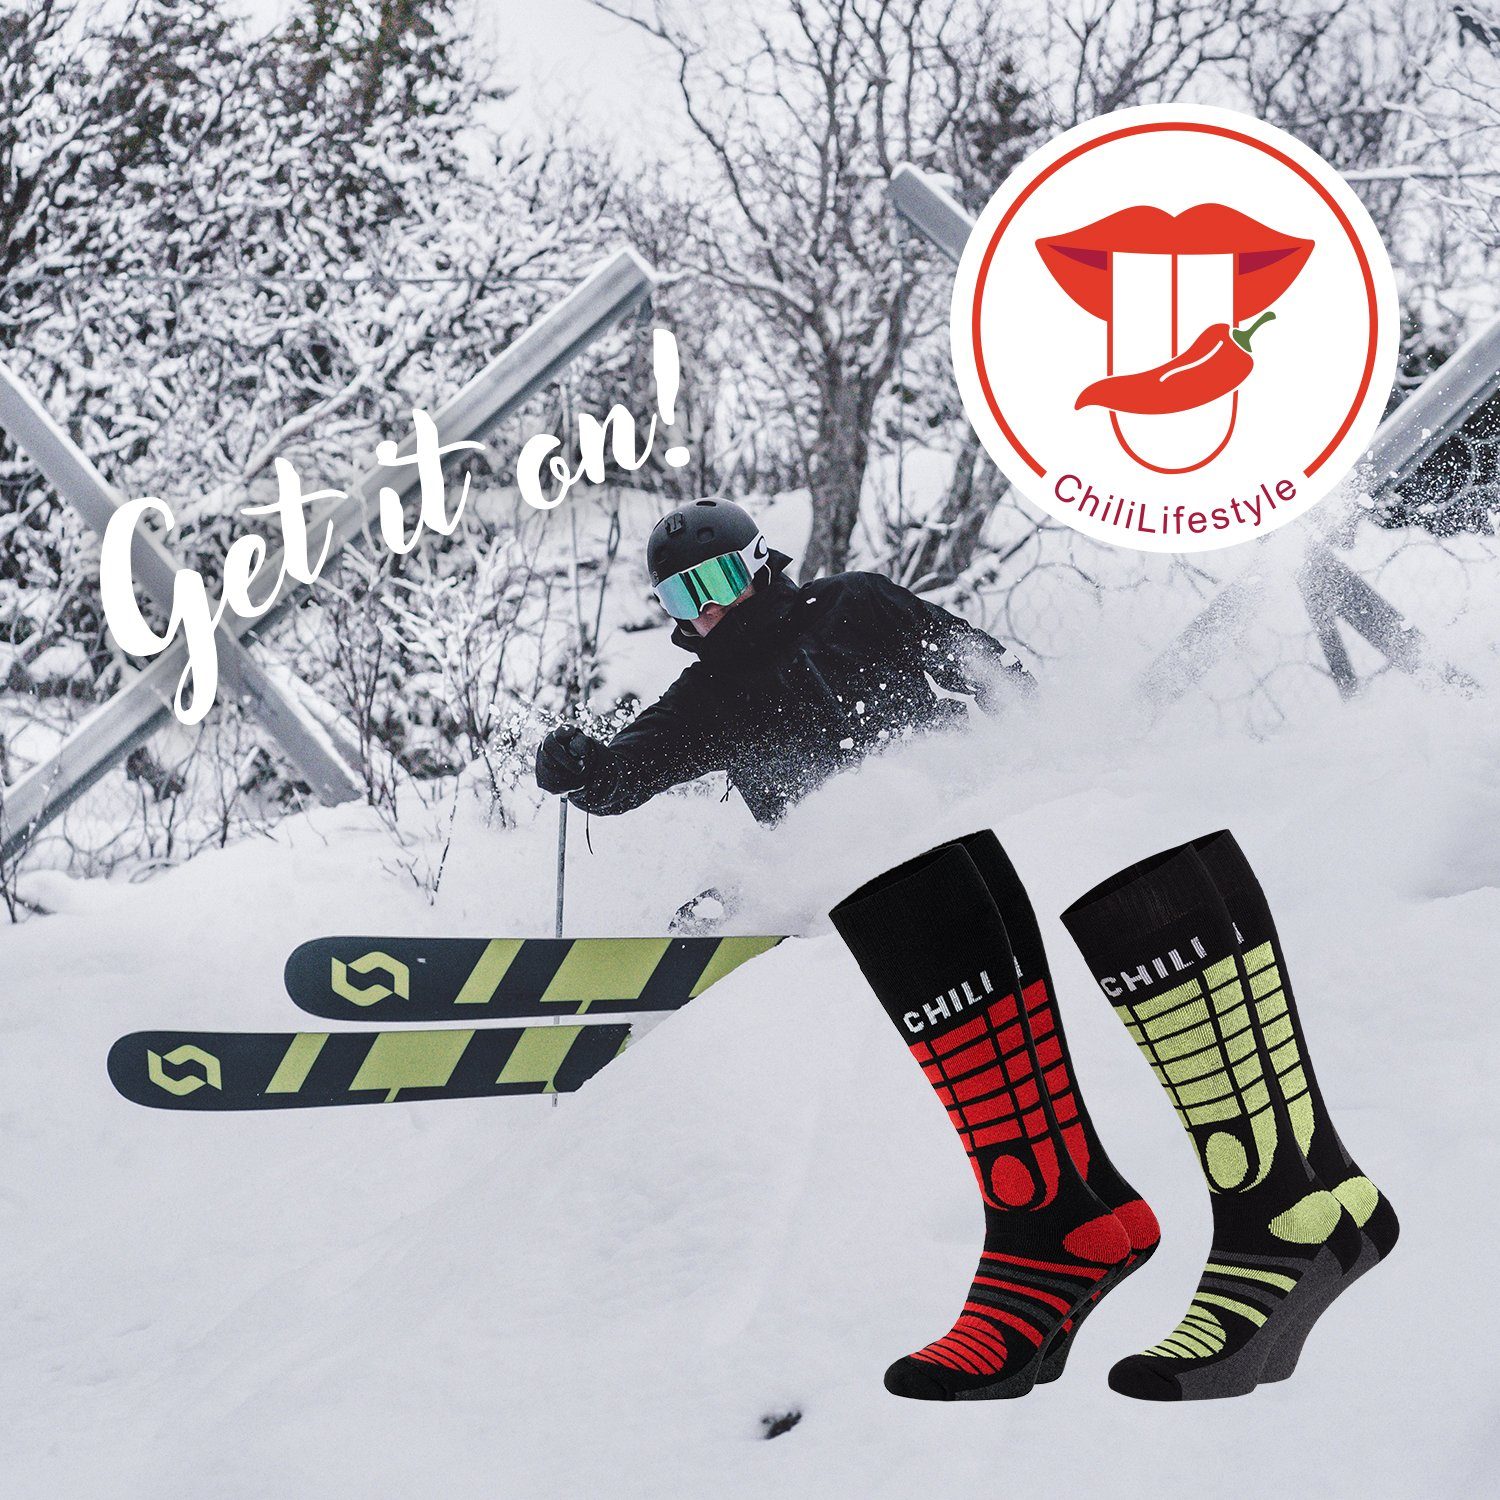 Chili Lifestyle Strümpfe Yeon/Red Paar Socken 2 Winter Ski Knie